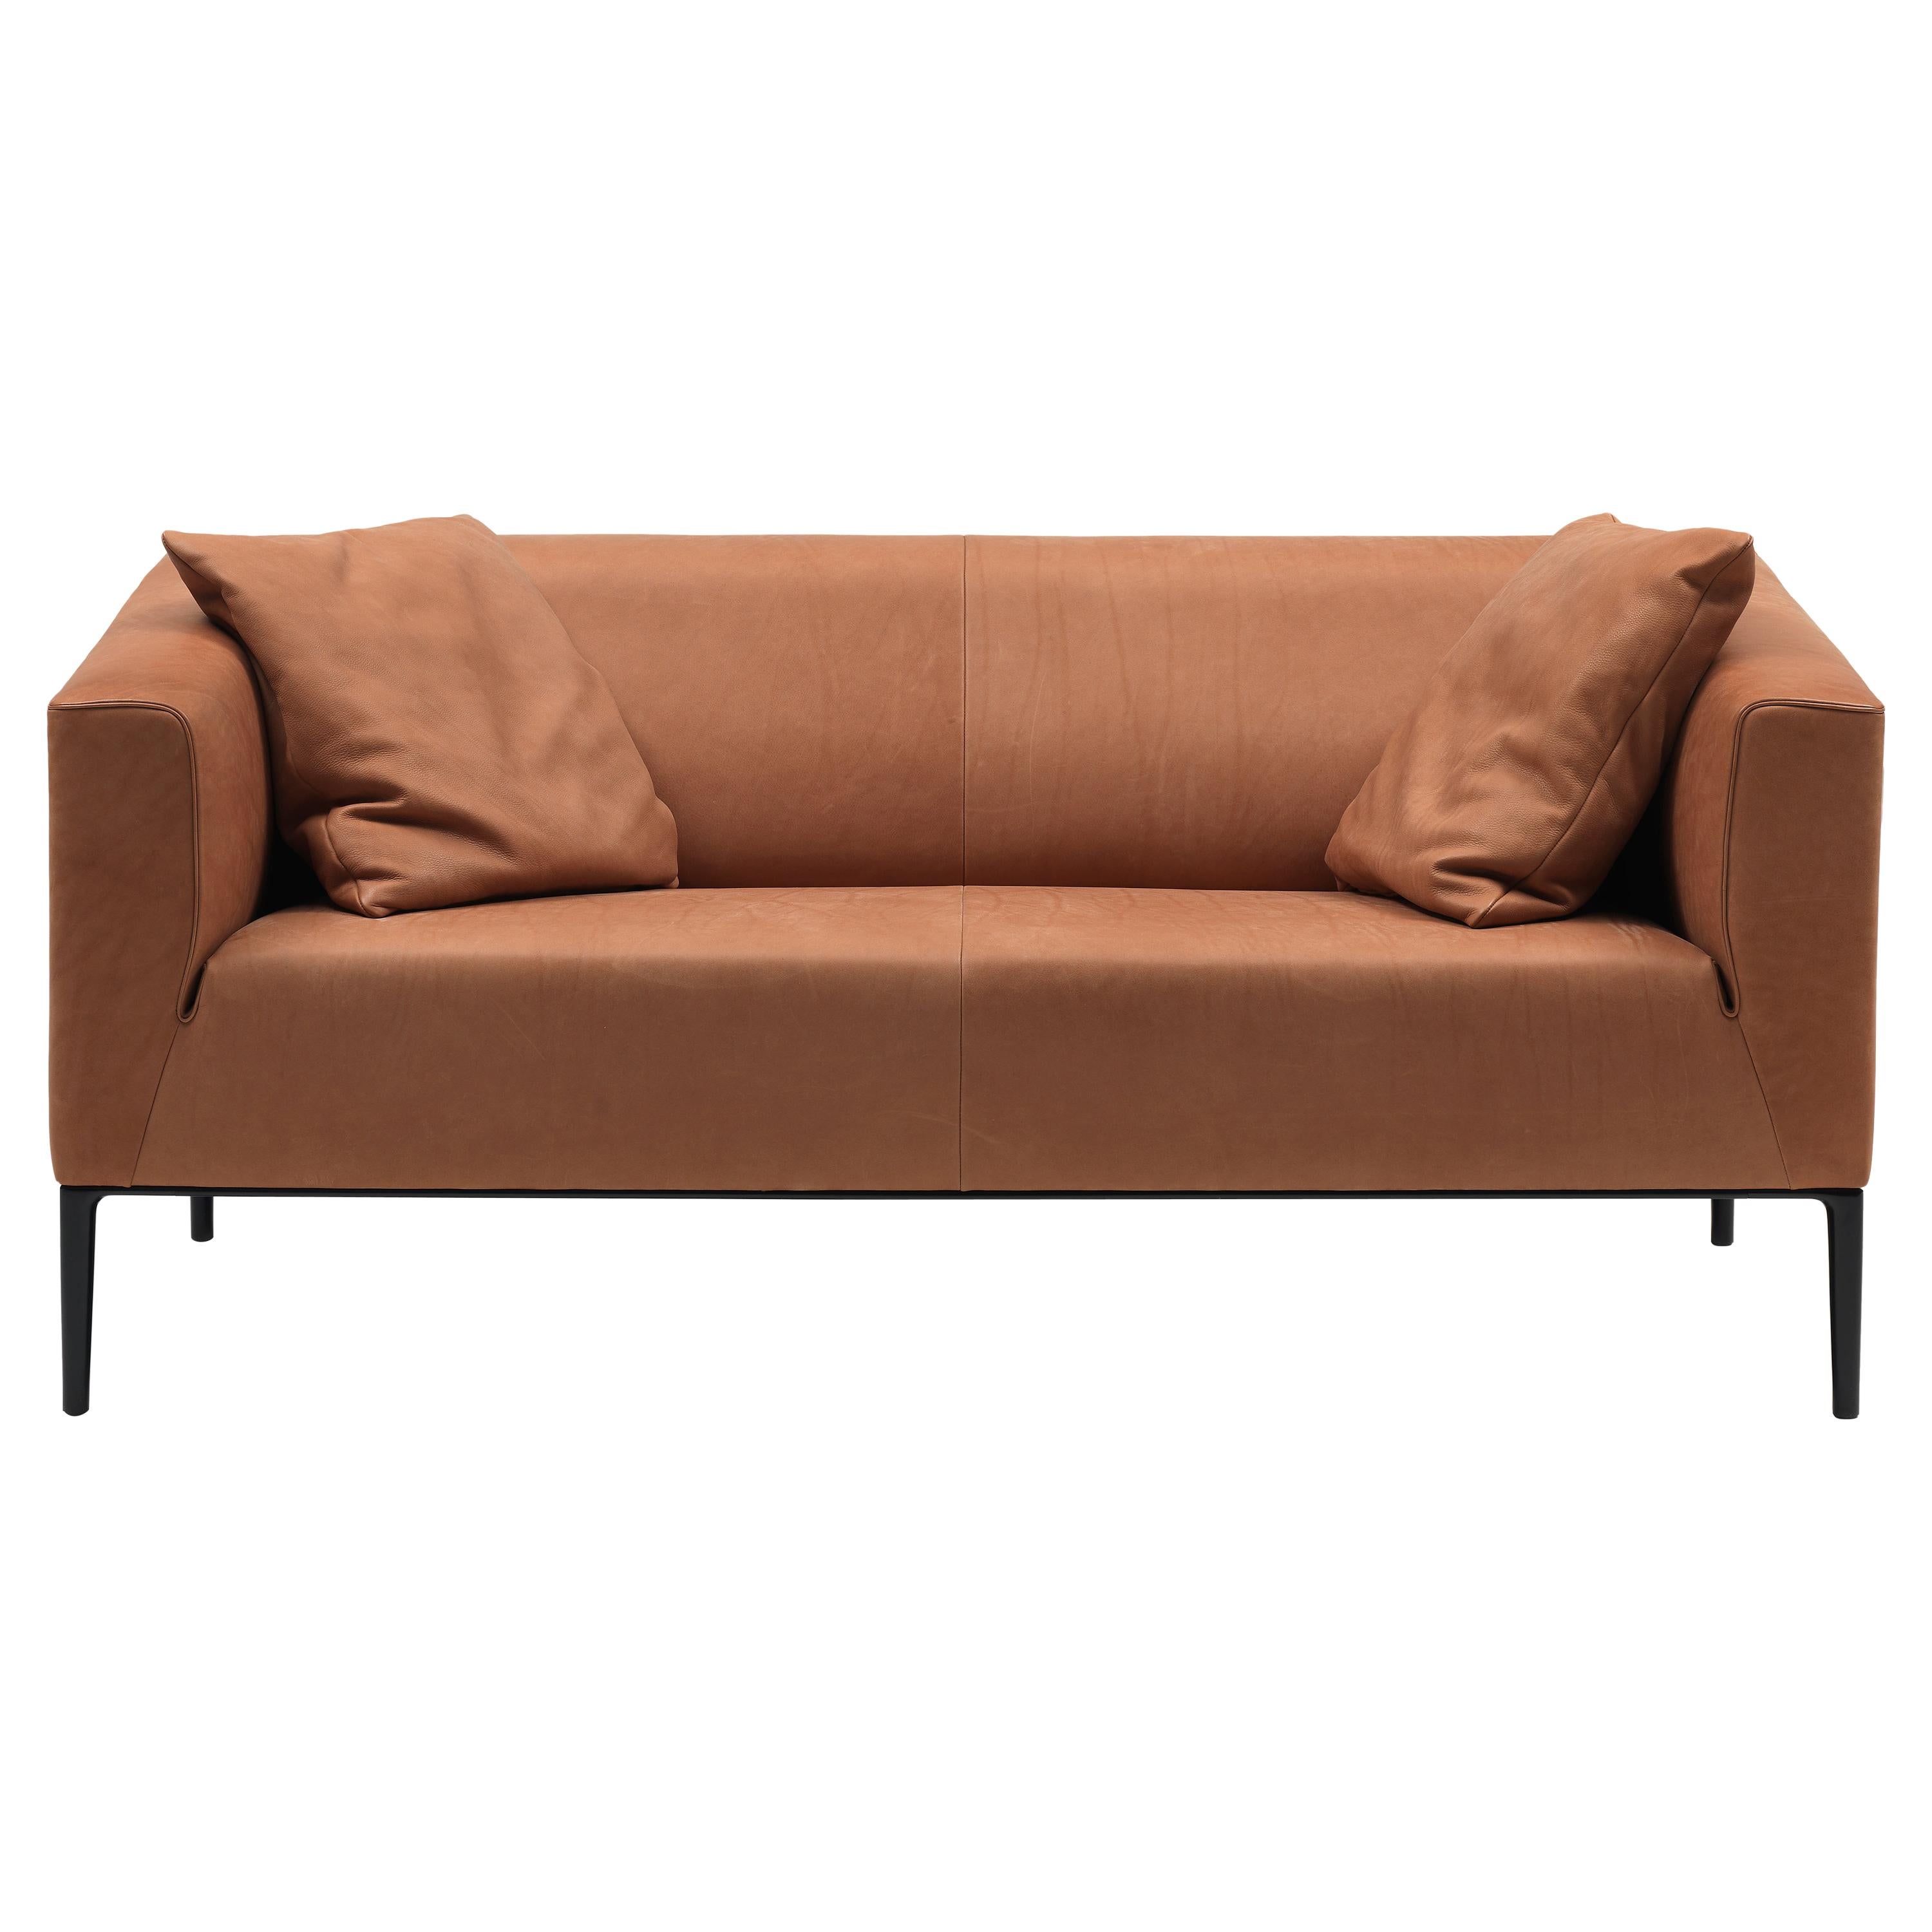 DS-161 Sofa by De Sede For Sale